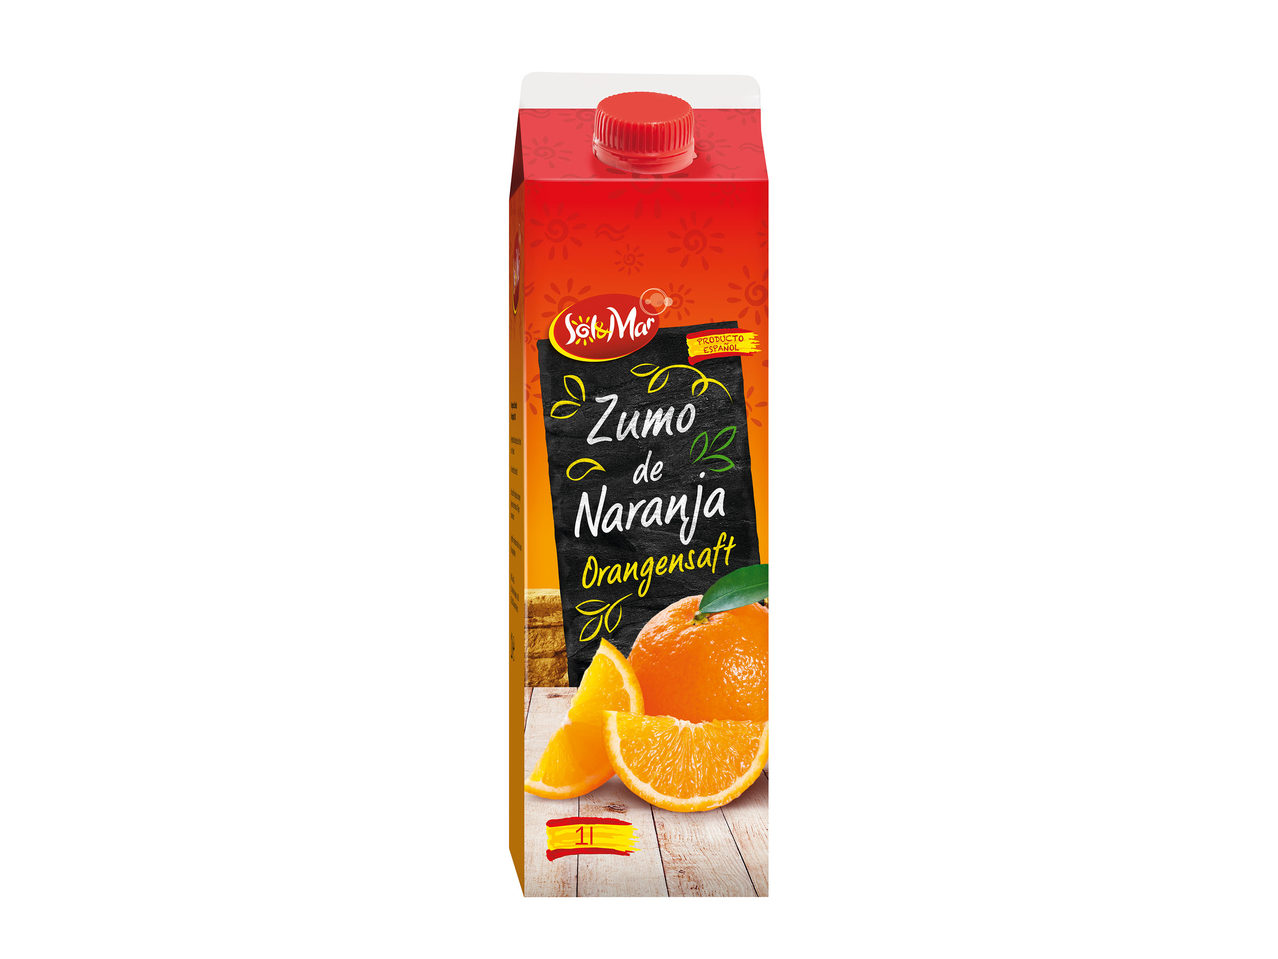 Suc de portocale